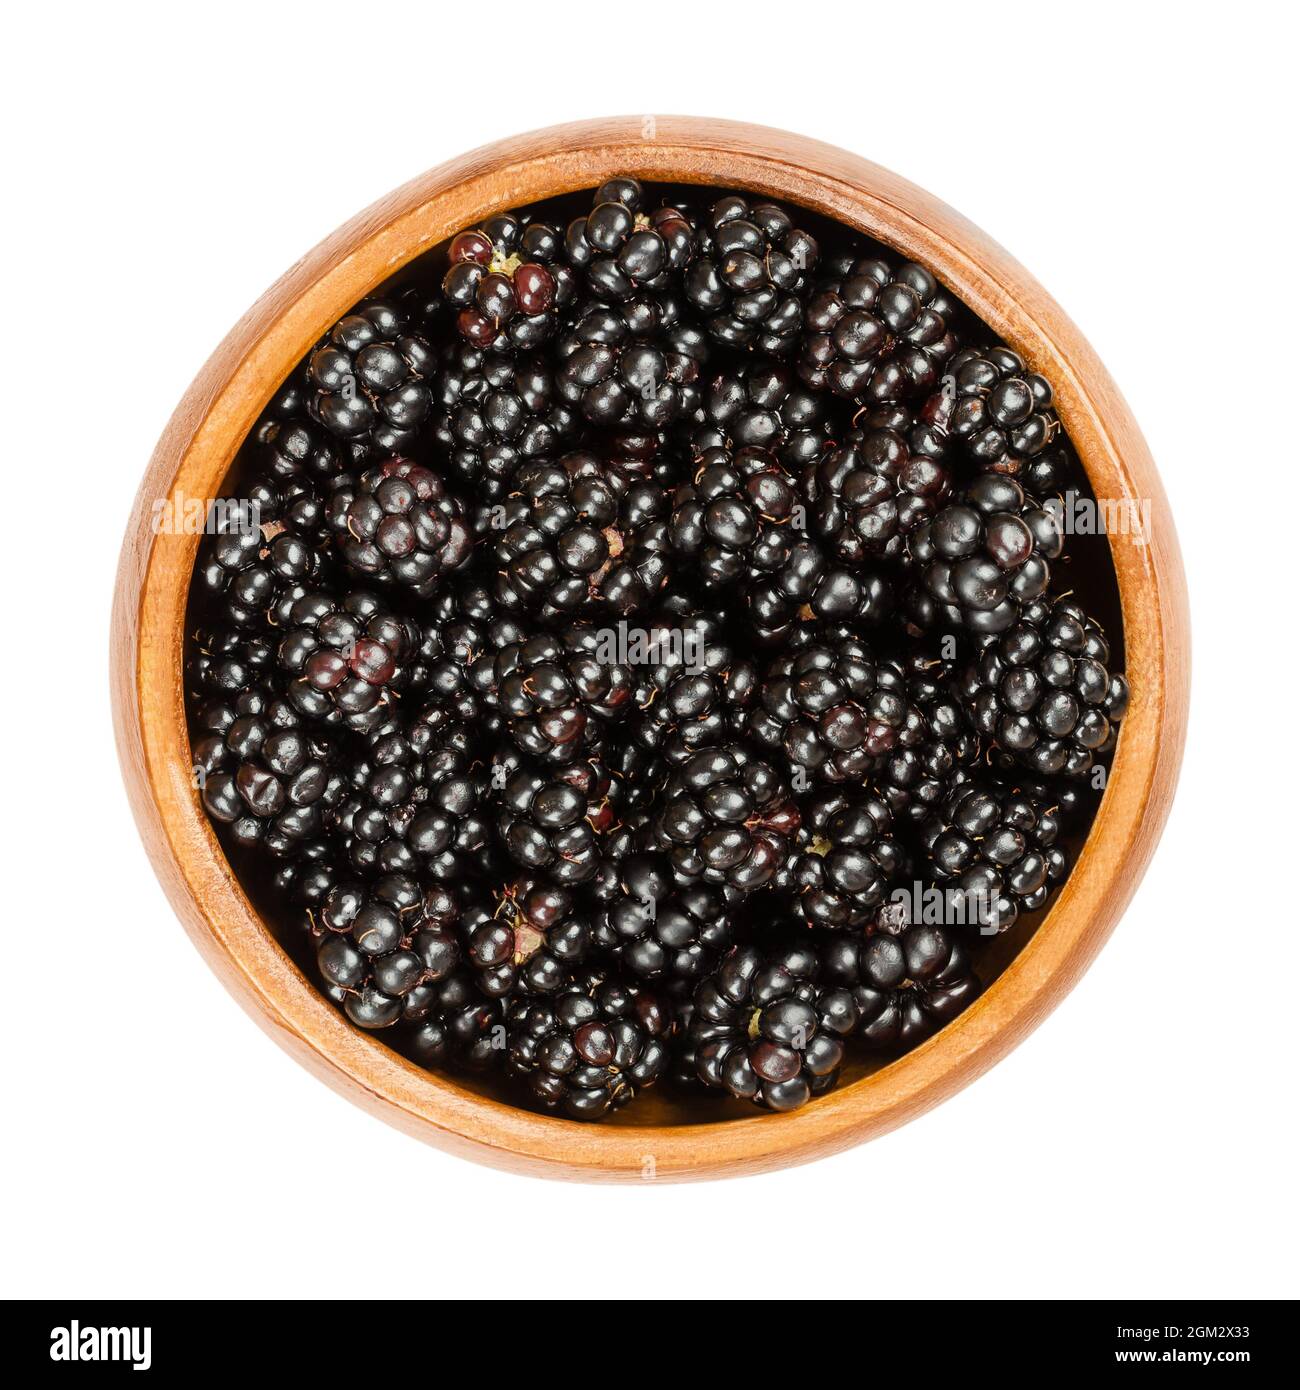 Bacche nere europee in una ciotola di legno. Brambles selvaggi freschi e maturi, Rubus fruticosus, una frutta dolce, utilizzata per dolci e marmellate. Foto Stock